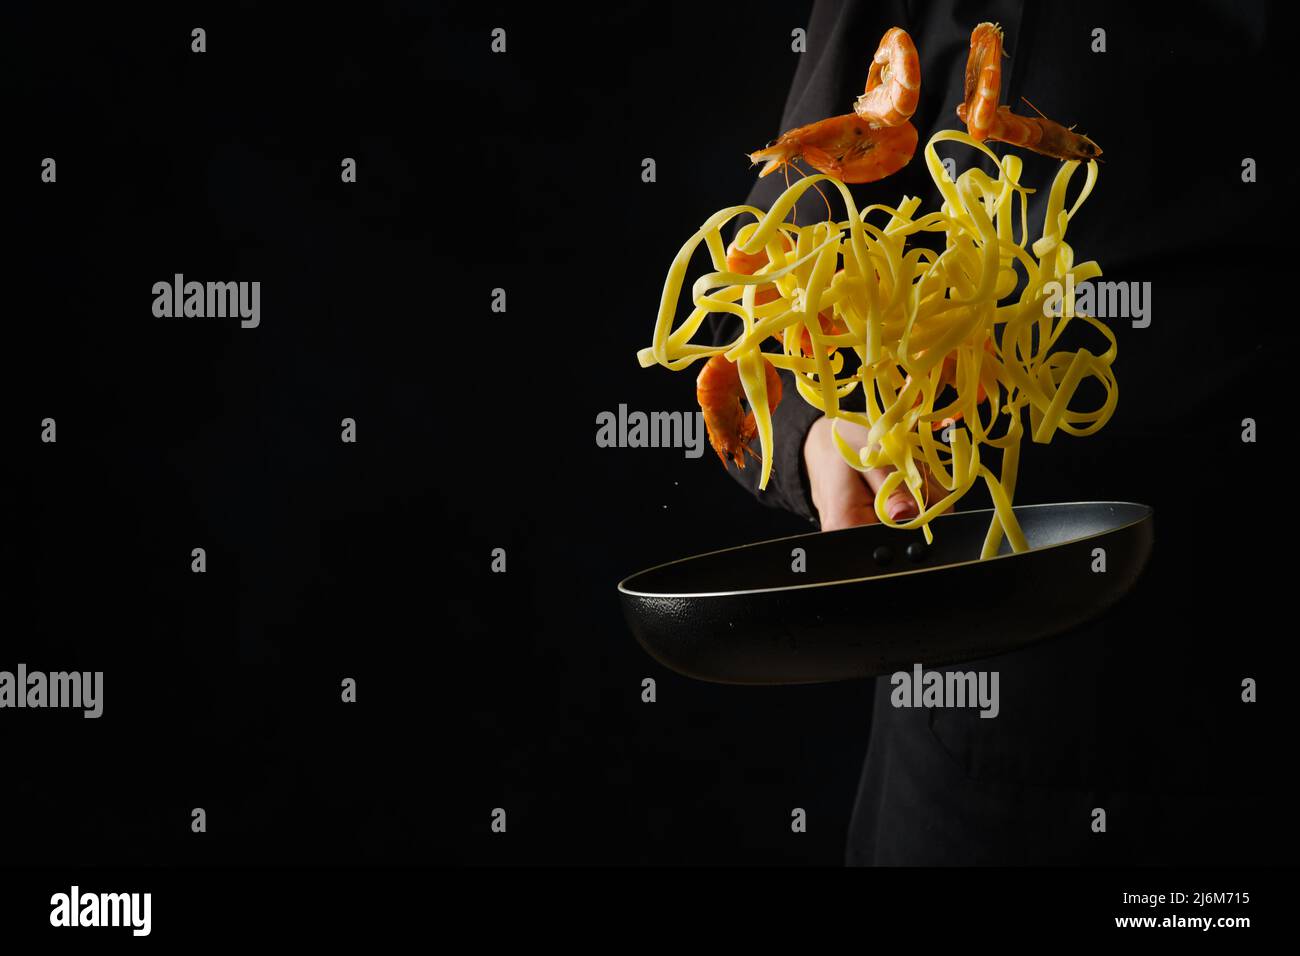 Cuisine italienne. Pâtes de crevettes dans une poêle sur fond noir dans un vol gelé dans la main d'un chef professionnel en uniforme noir. Publicité Banque D'Images